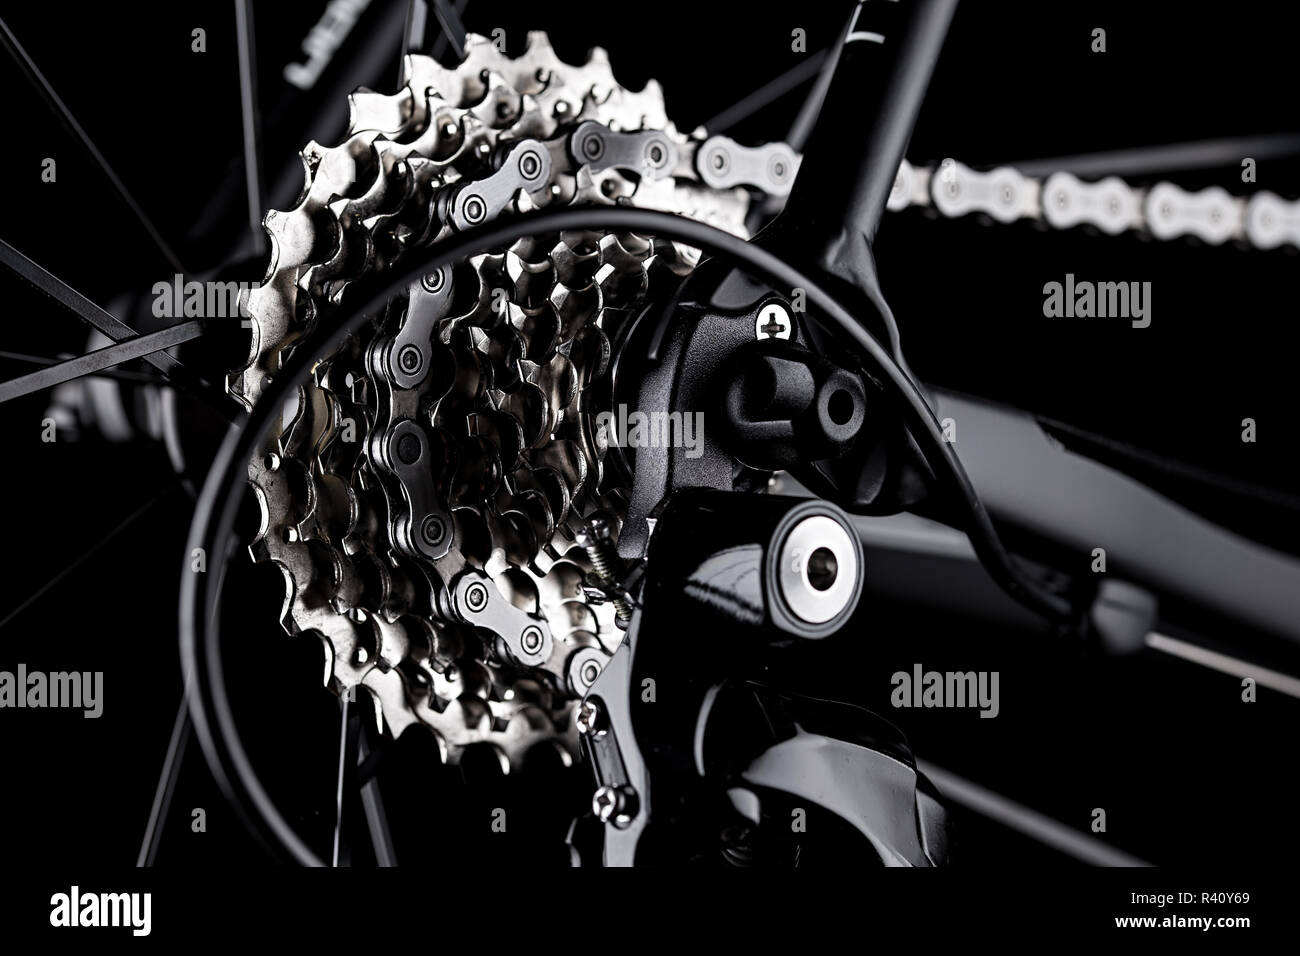 Noleggio bici deragliatore posteriore ingranaggio catena casette dettaglio chiudere up shot nero lo sfondo scuro Foto Stock